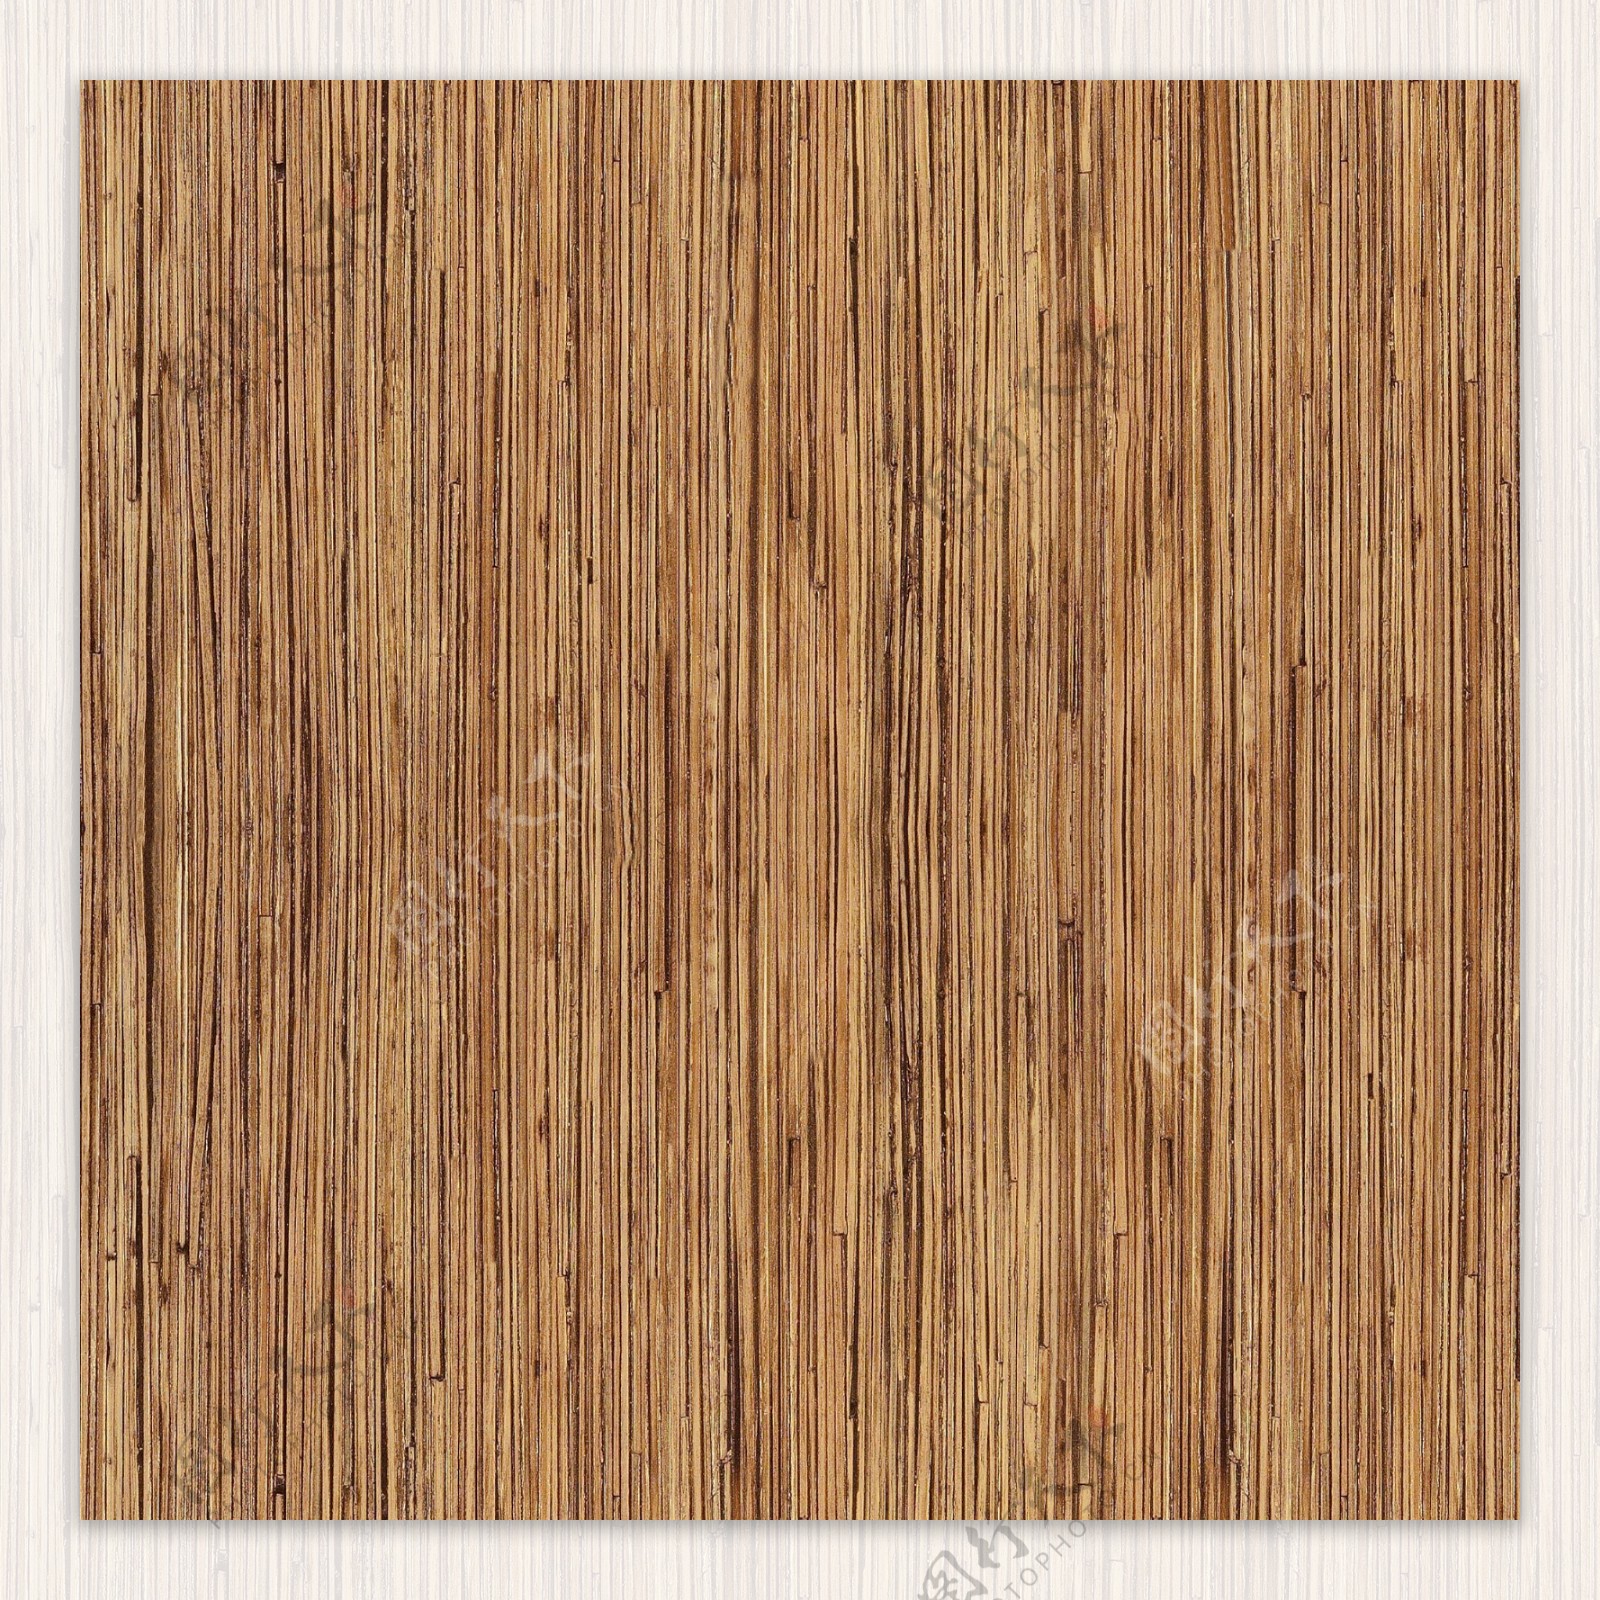 家具饰面木板棕黄色木纹贴图